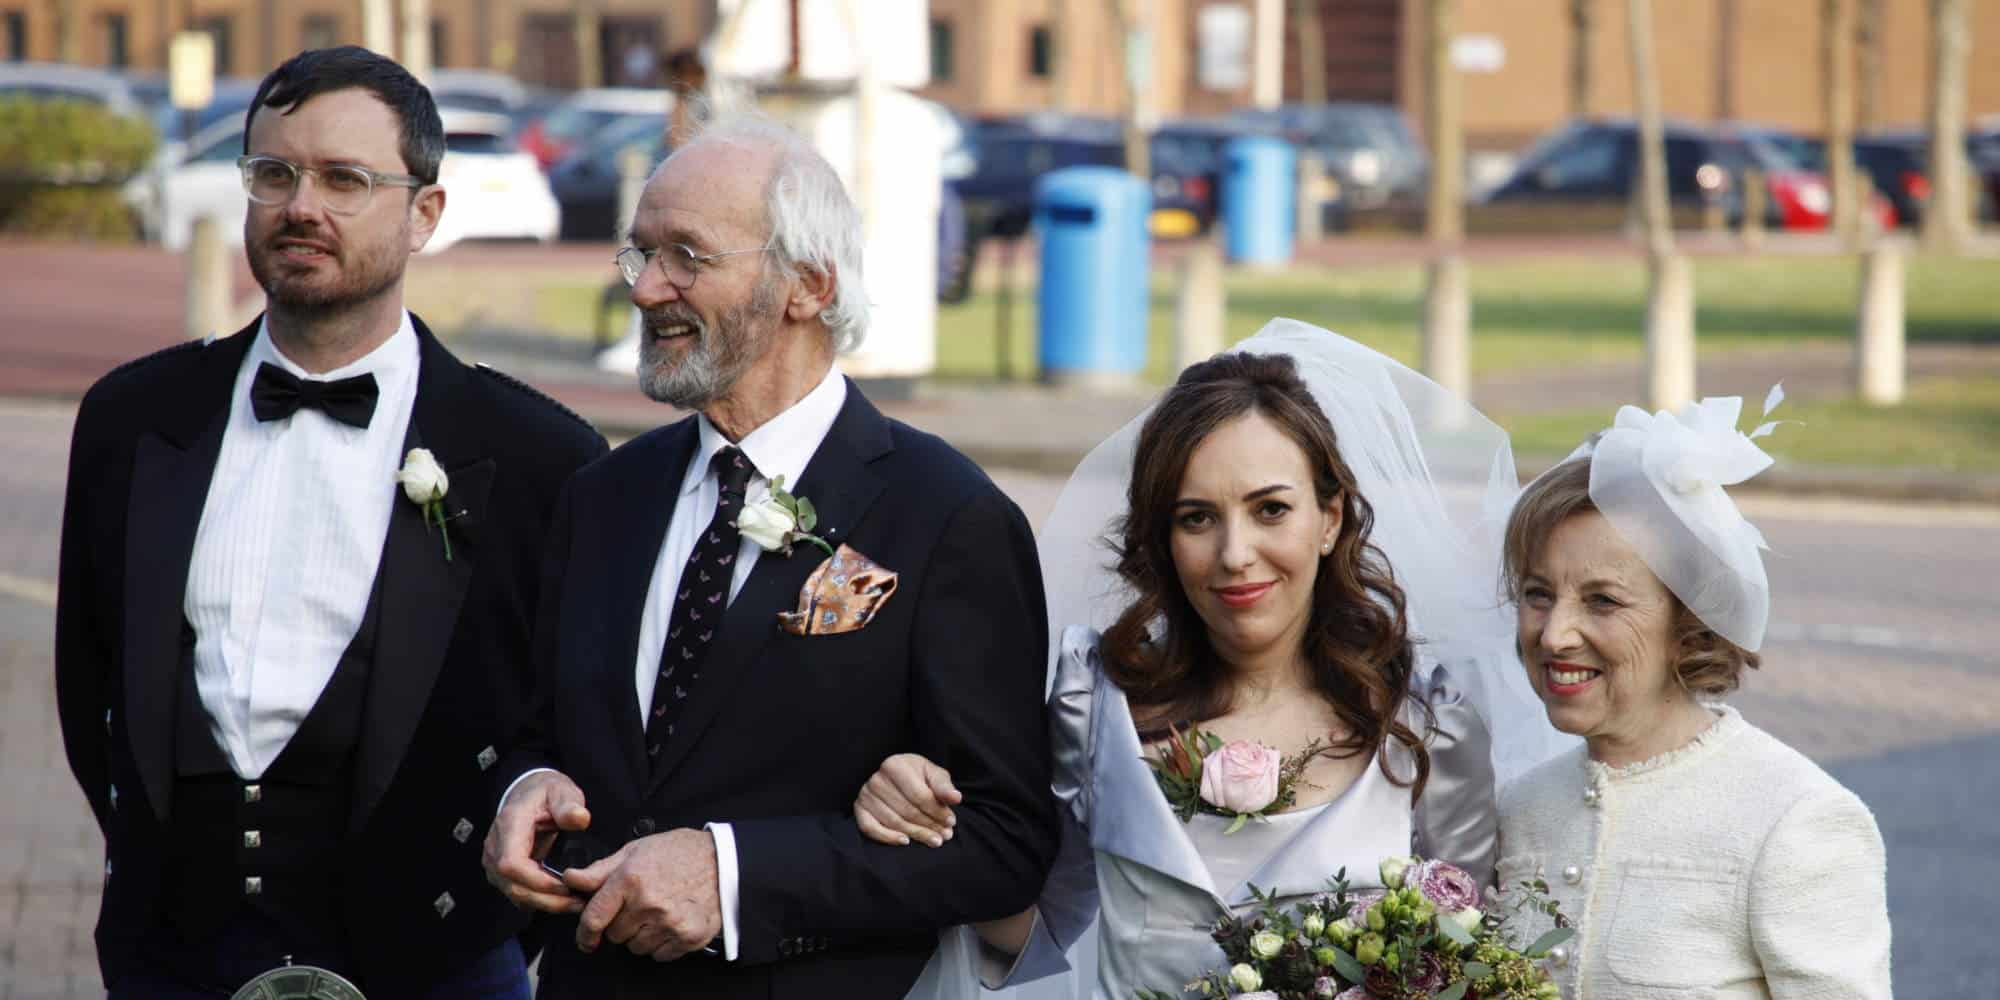 Ο γάμος του Τζούλιαν Άσανζ, με την σύζυγό του να φορά νυφικό της σχεδιάστριας, Βίβιαν Γουέστγουντ